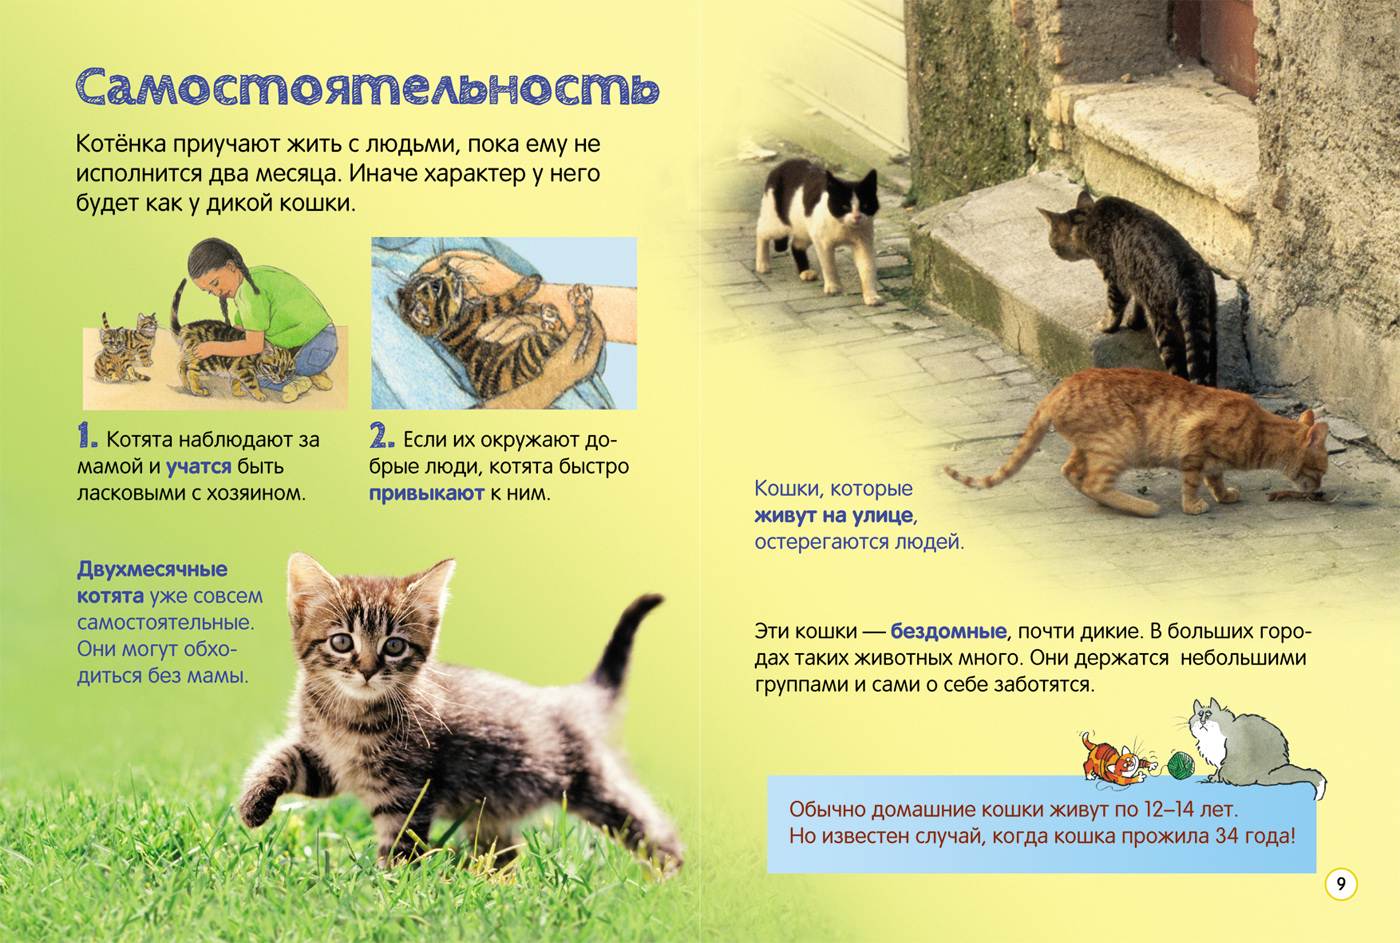 Кошки-метисы: описание породы, характер, советы по содержанию и уходу, фото